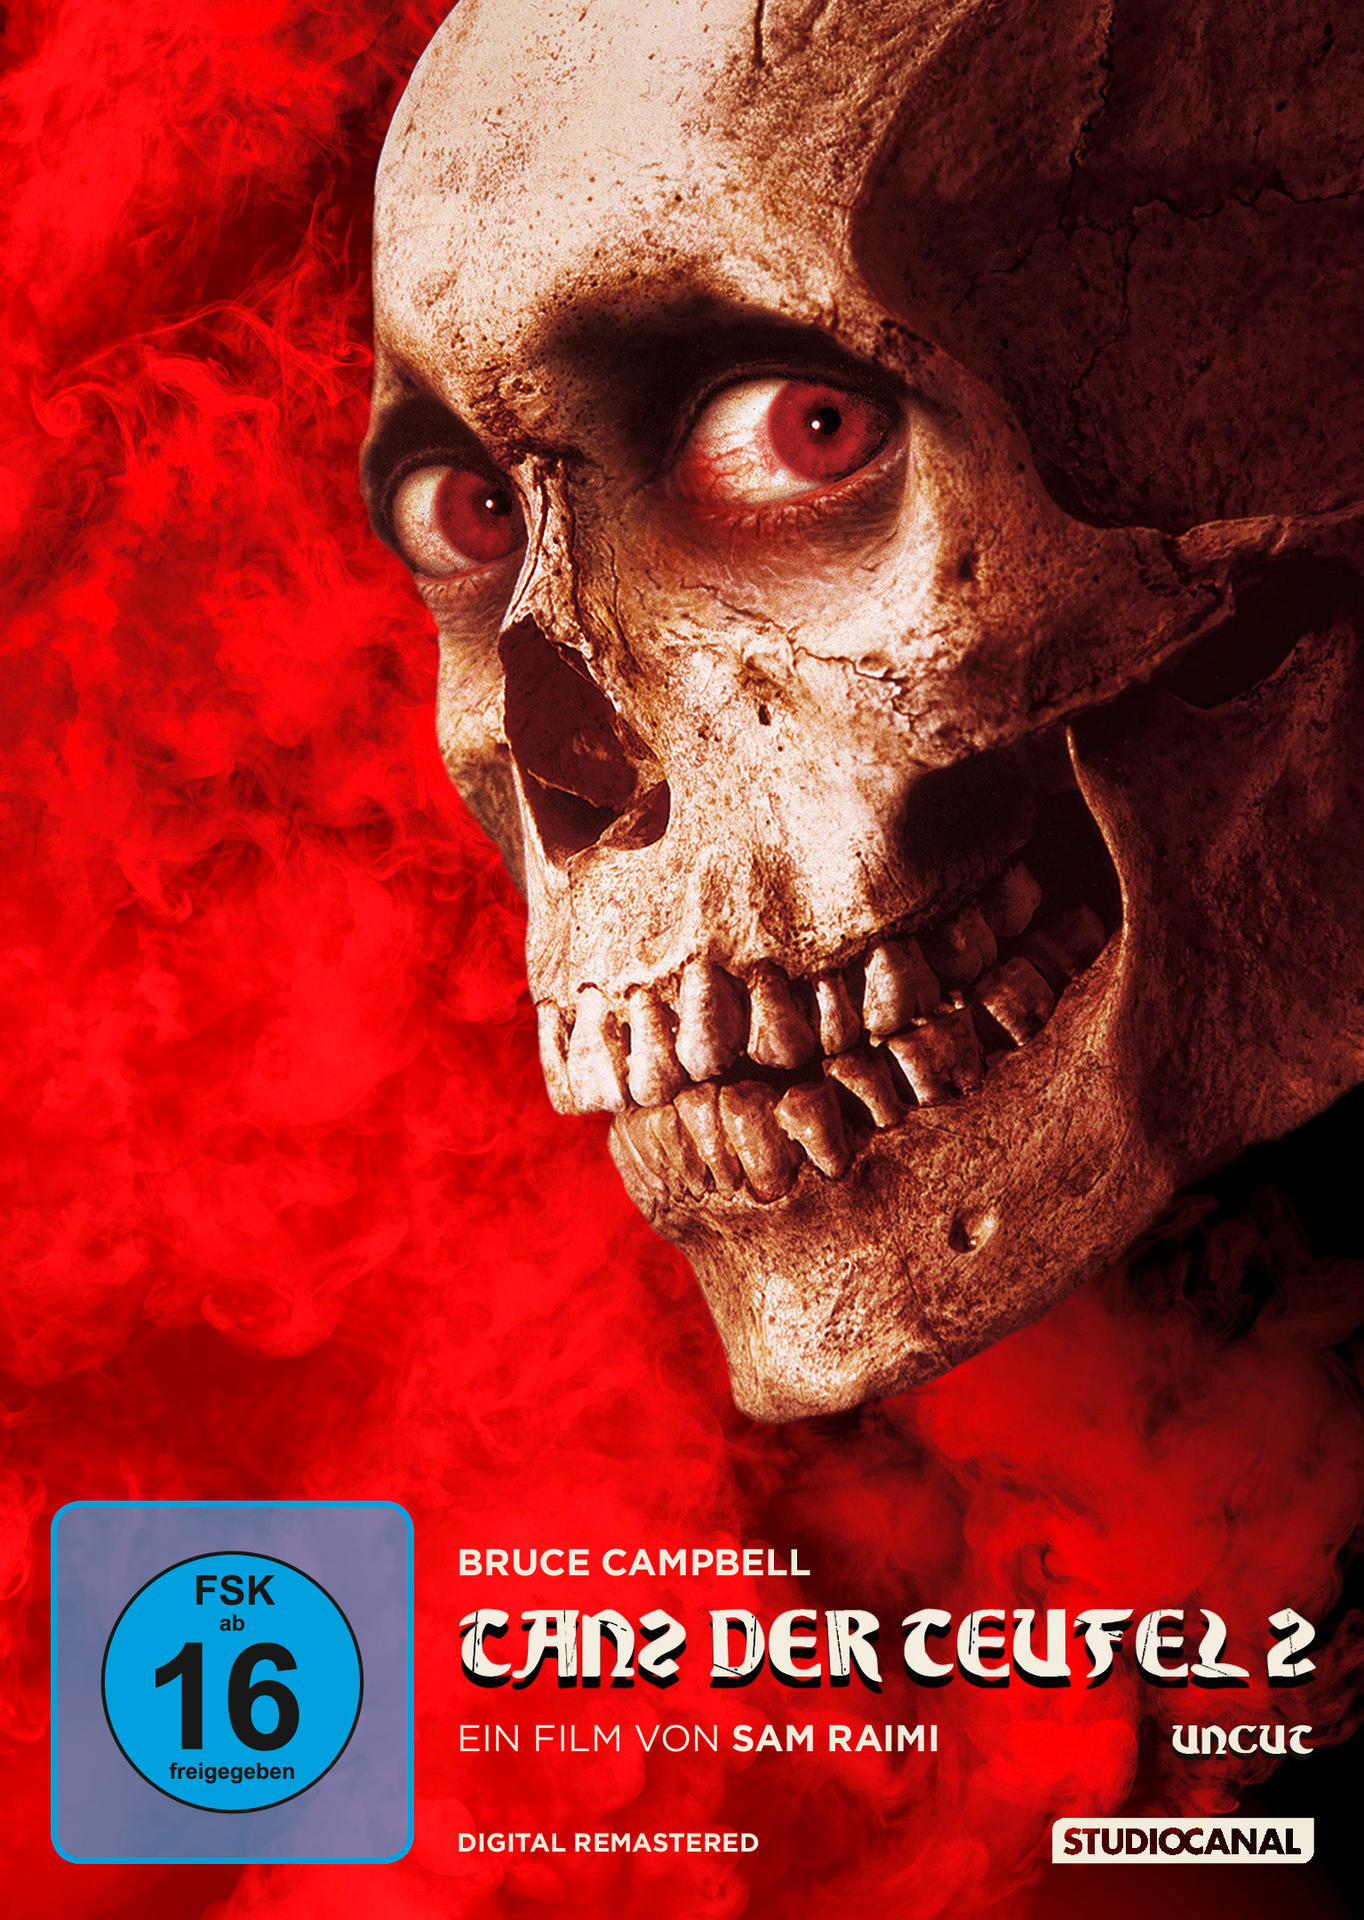 DVD Teufel Tanz Remastered der 2/Uncut/Digital